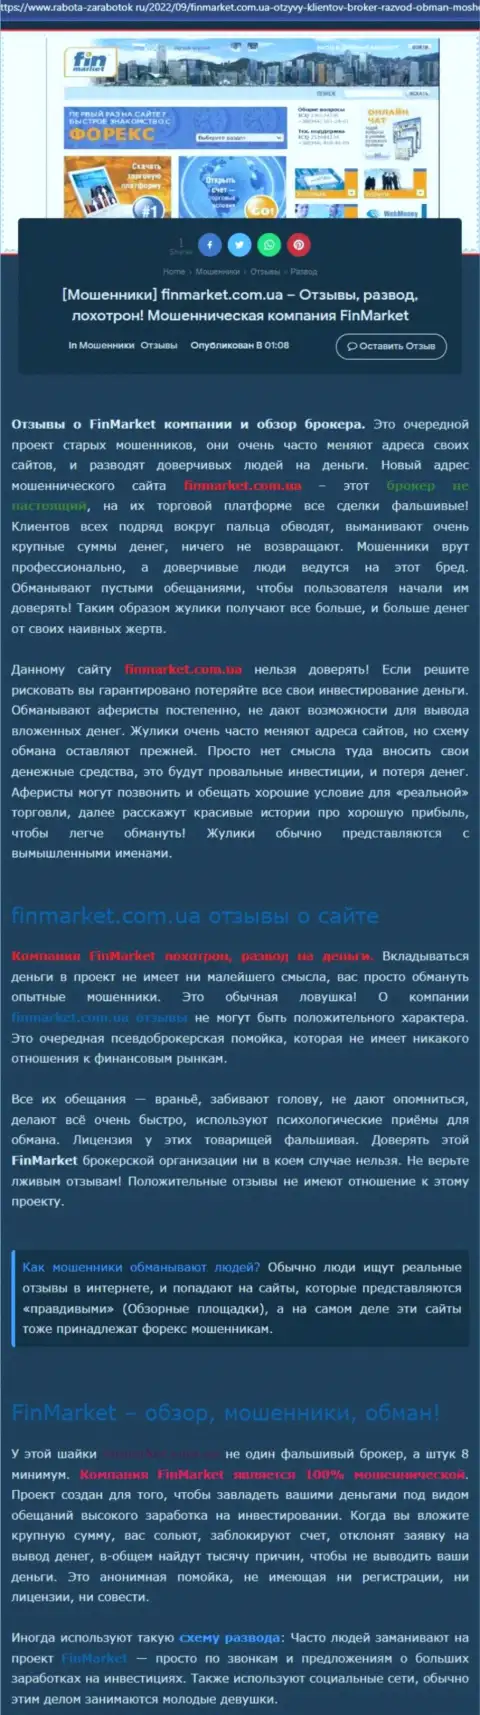 Анализ деяний организации Fin Market - обдирают жестко (обзор мошеннических деяний)